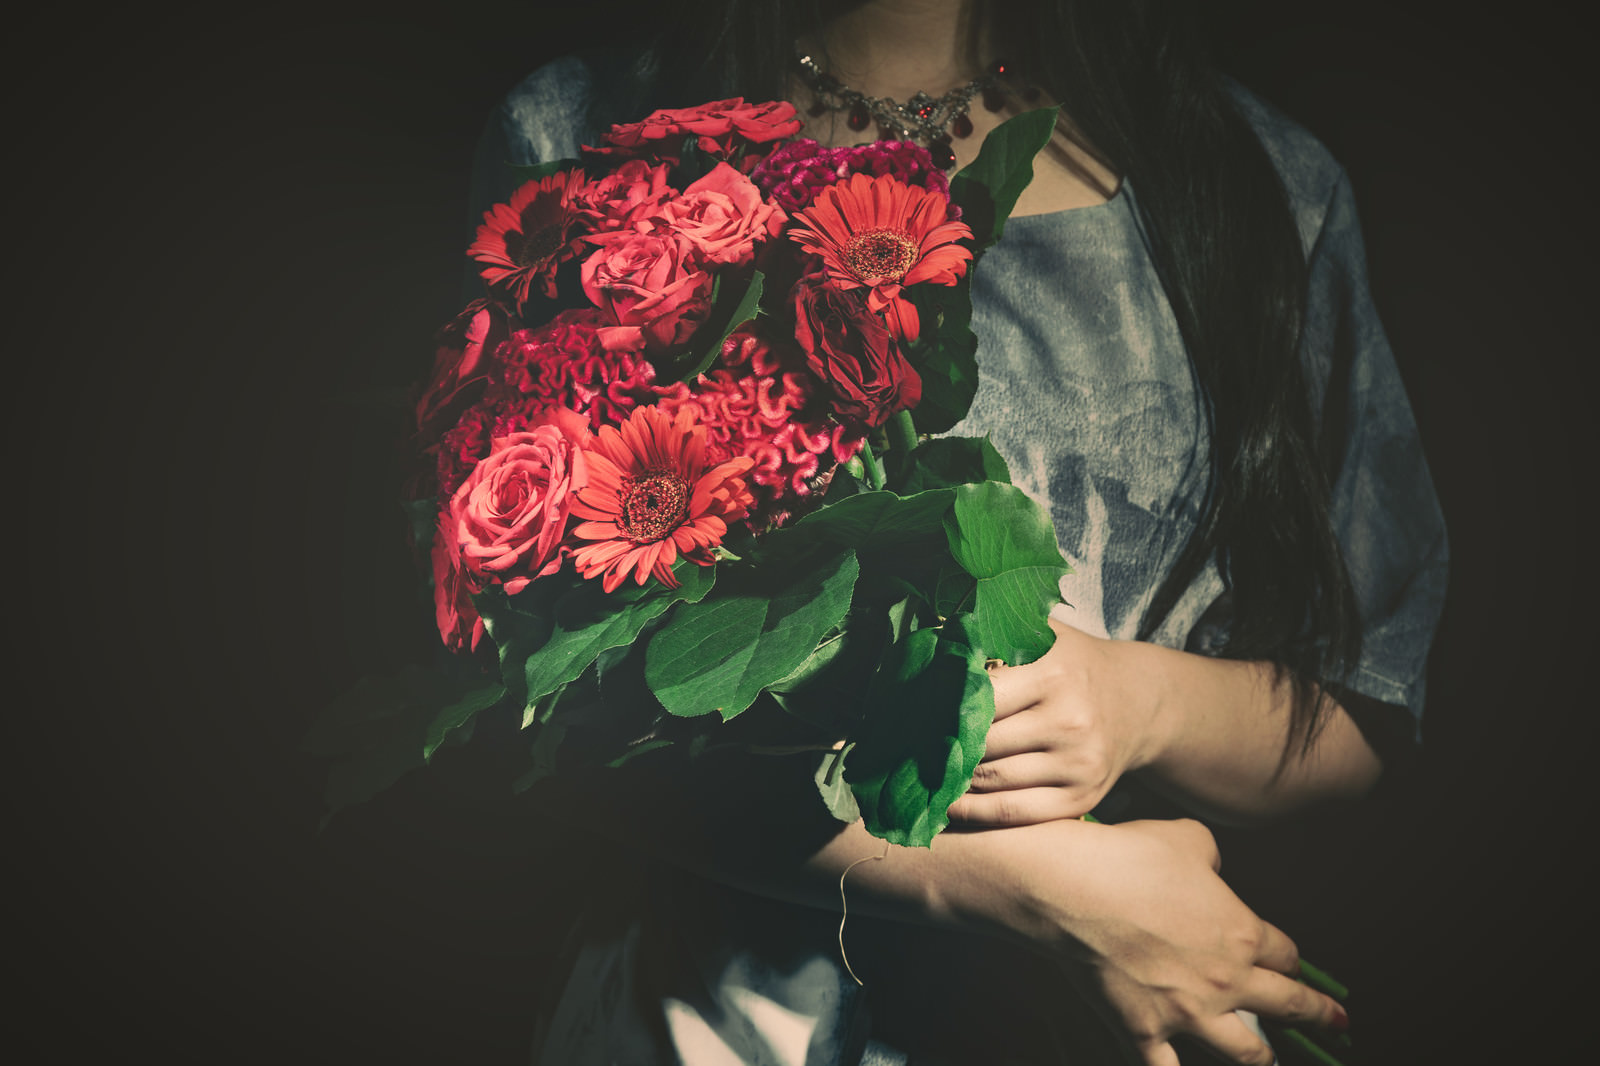 「バラの花束をを抱えた女性 | フリー素材のぱくたそ」の写真